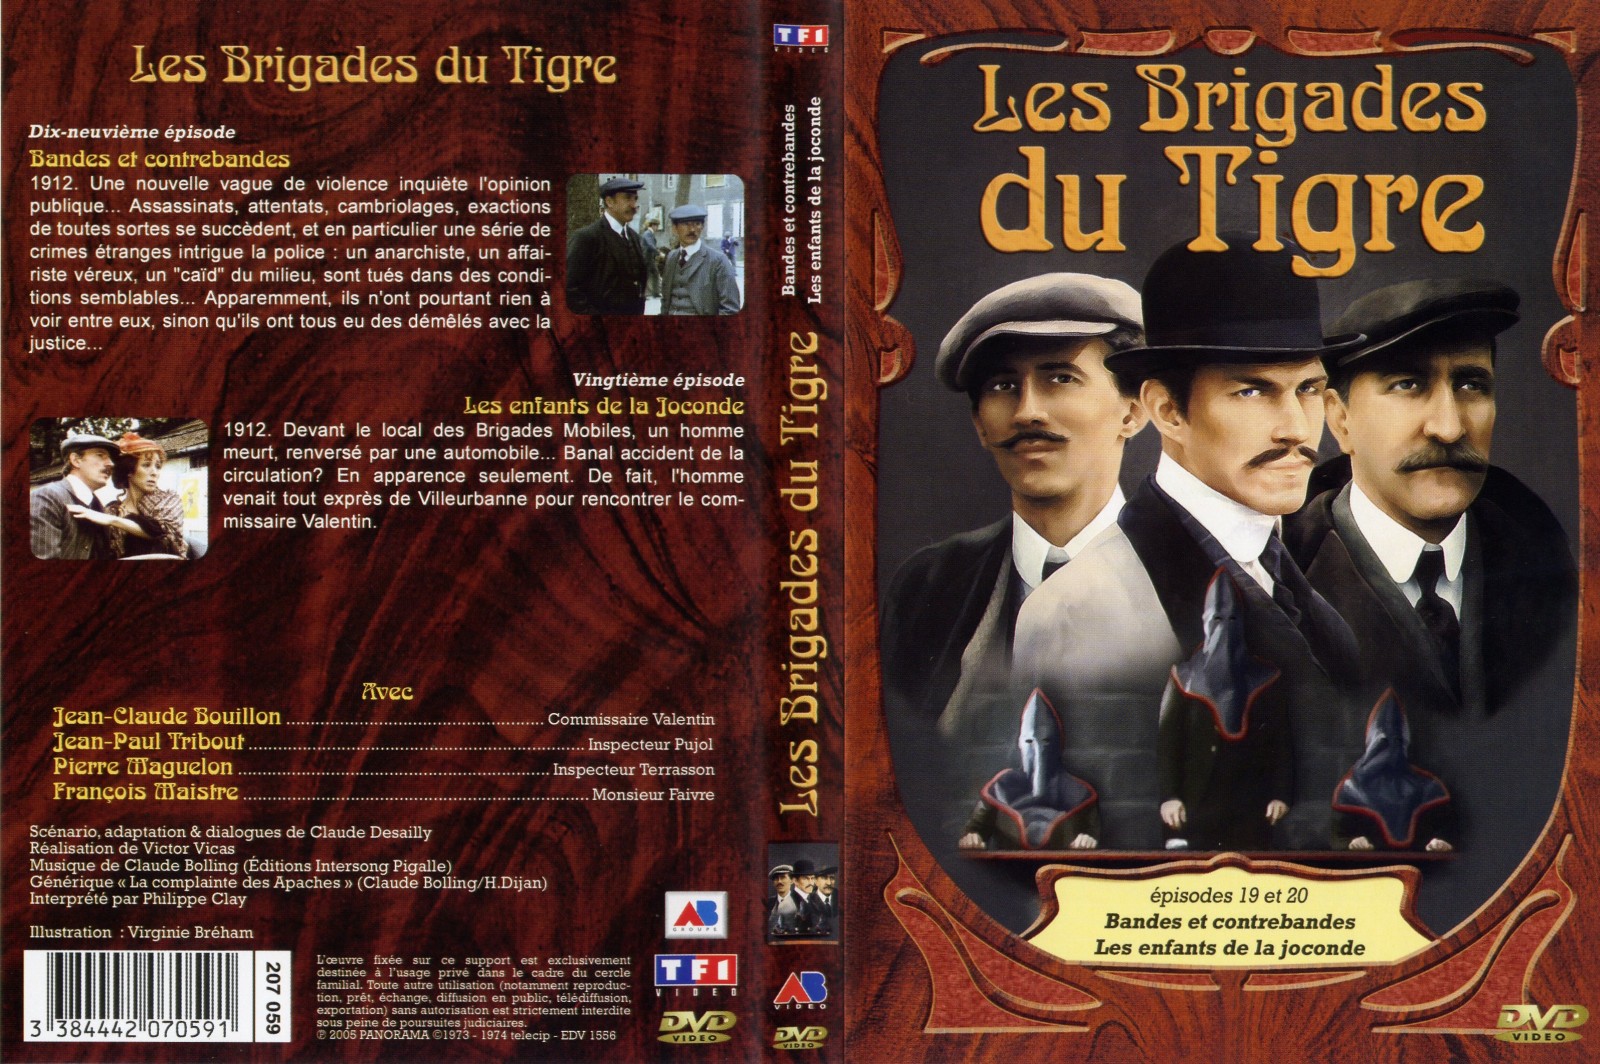 Jaquette DVD Les brigades du tigre vol 10